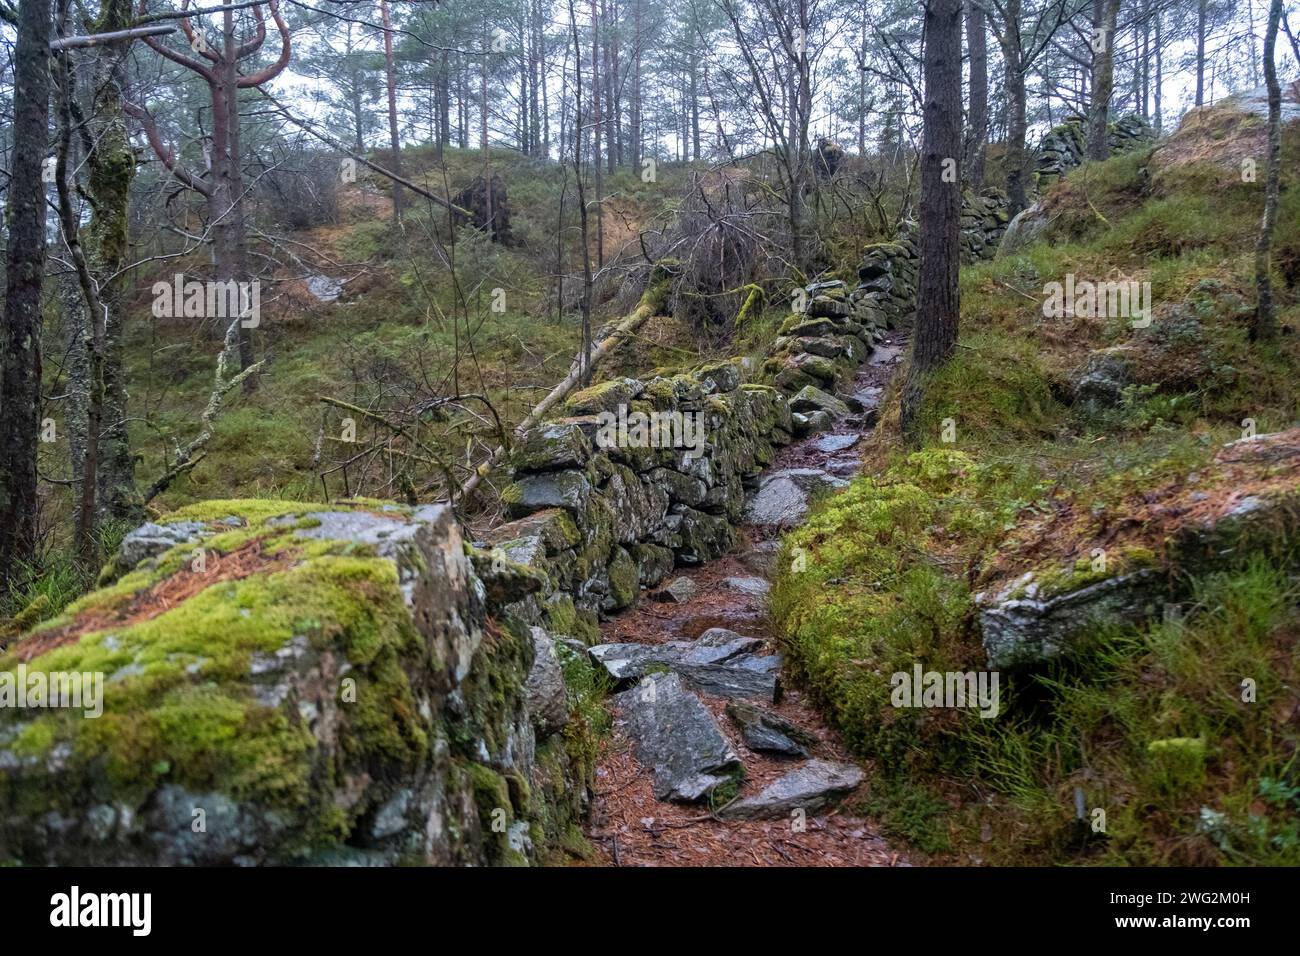 Moosbewachsene Steinmauer in einem Wald auf Askøy, in der Nähe von Bergen, Norwegen Stockfoto